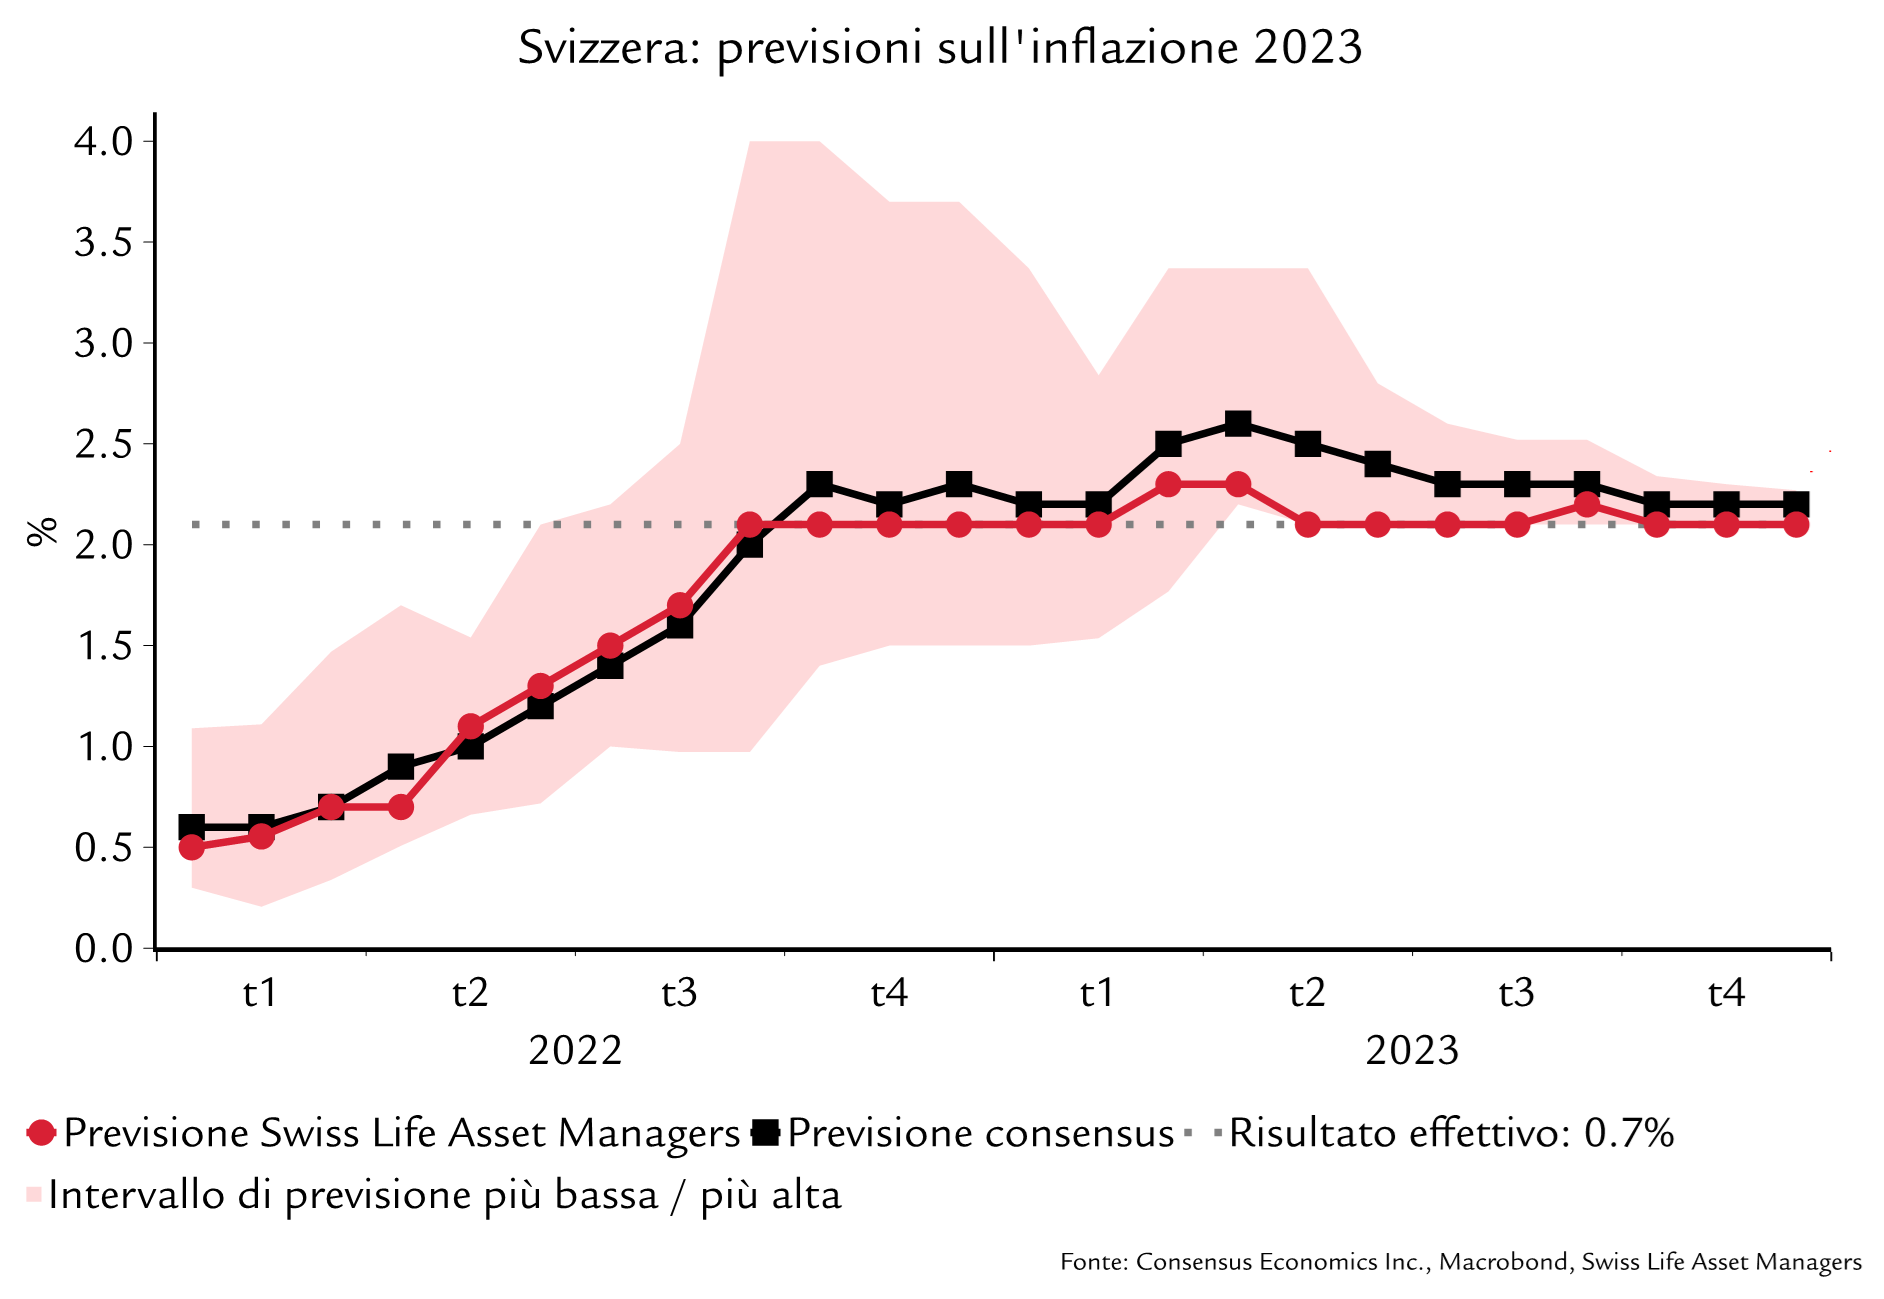 Previsione sull’inflazione in Svizzera nel 2023 e risultato effettivo